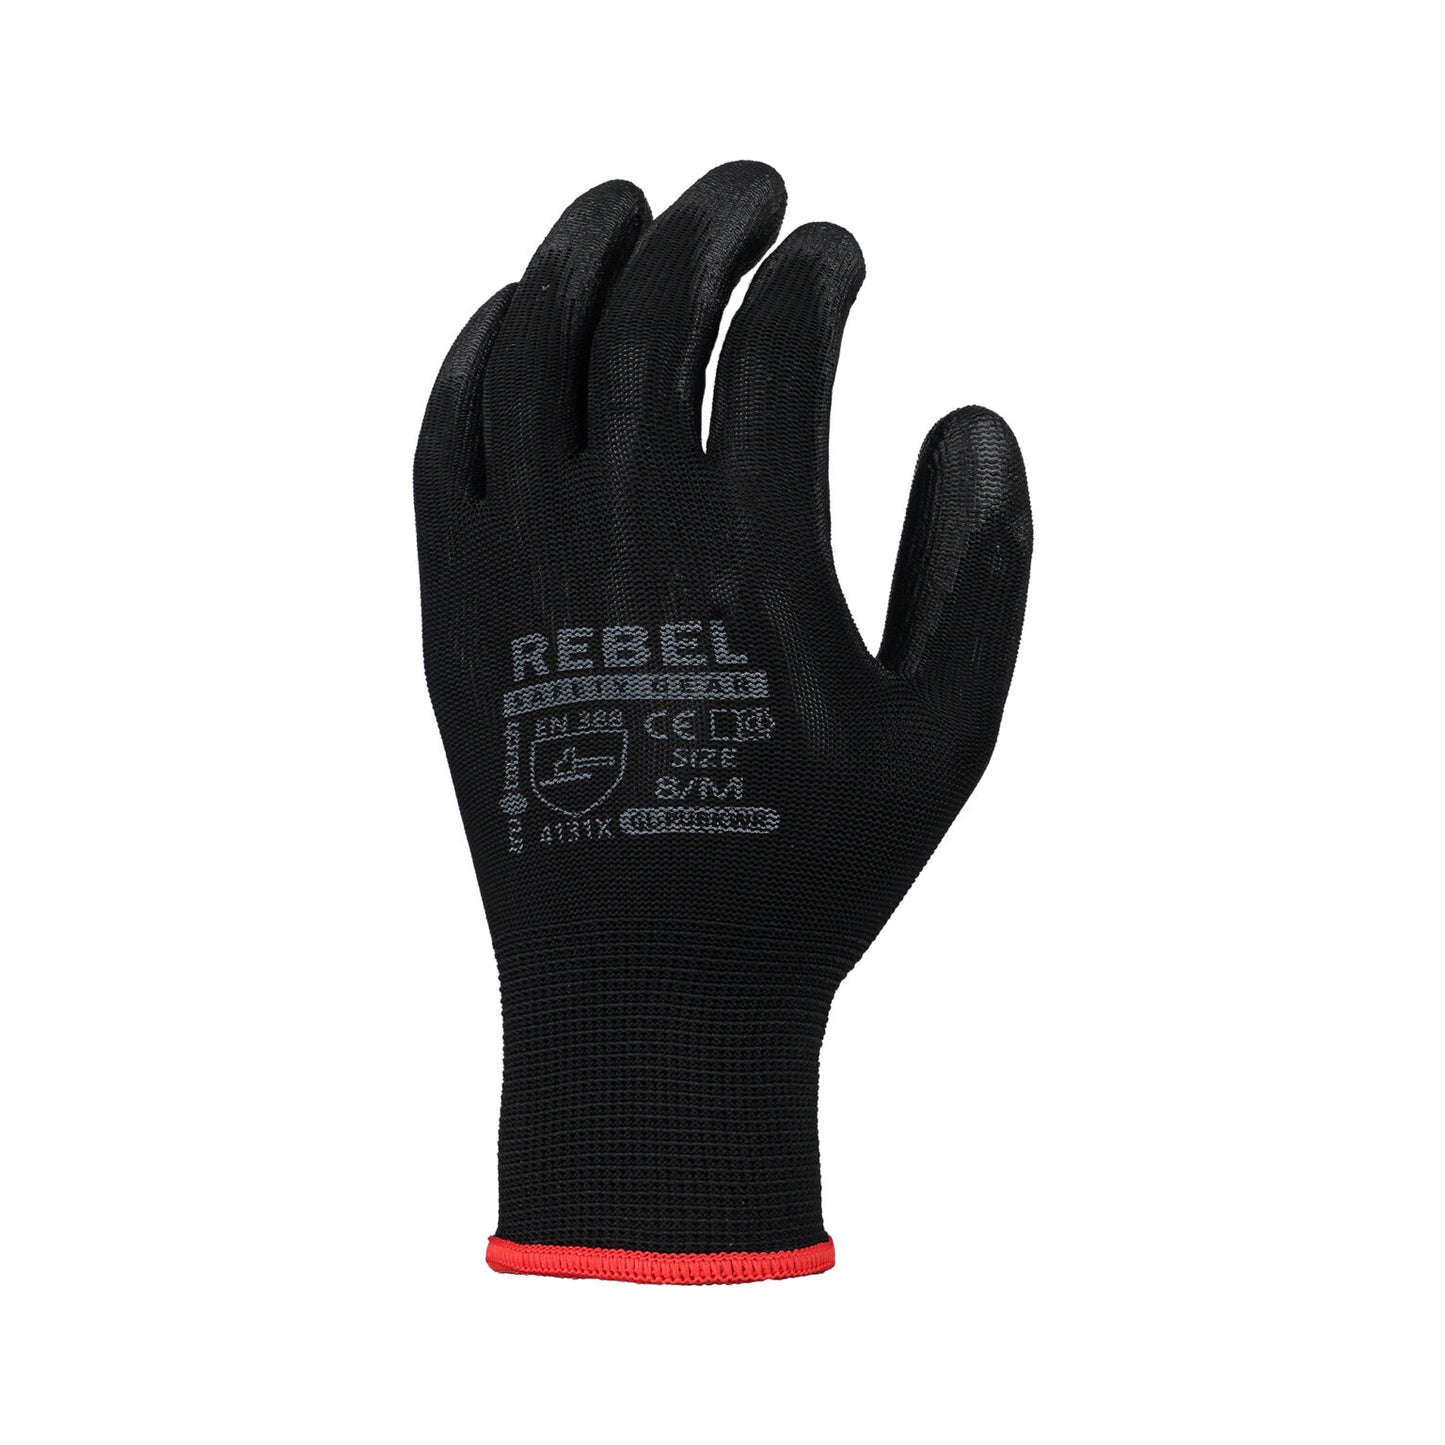 Black PU Coated General Handling Gloves (12 Gloves)